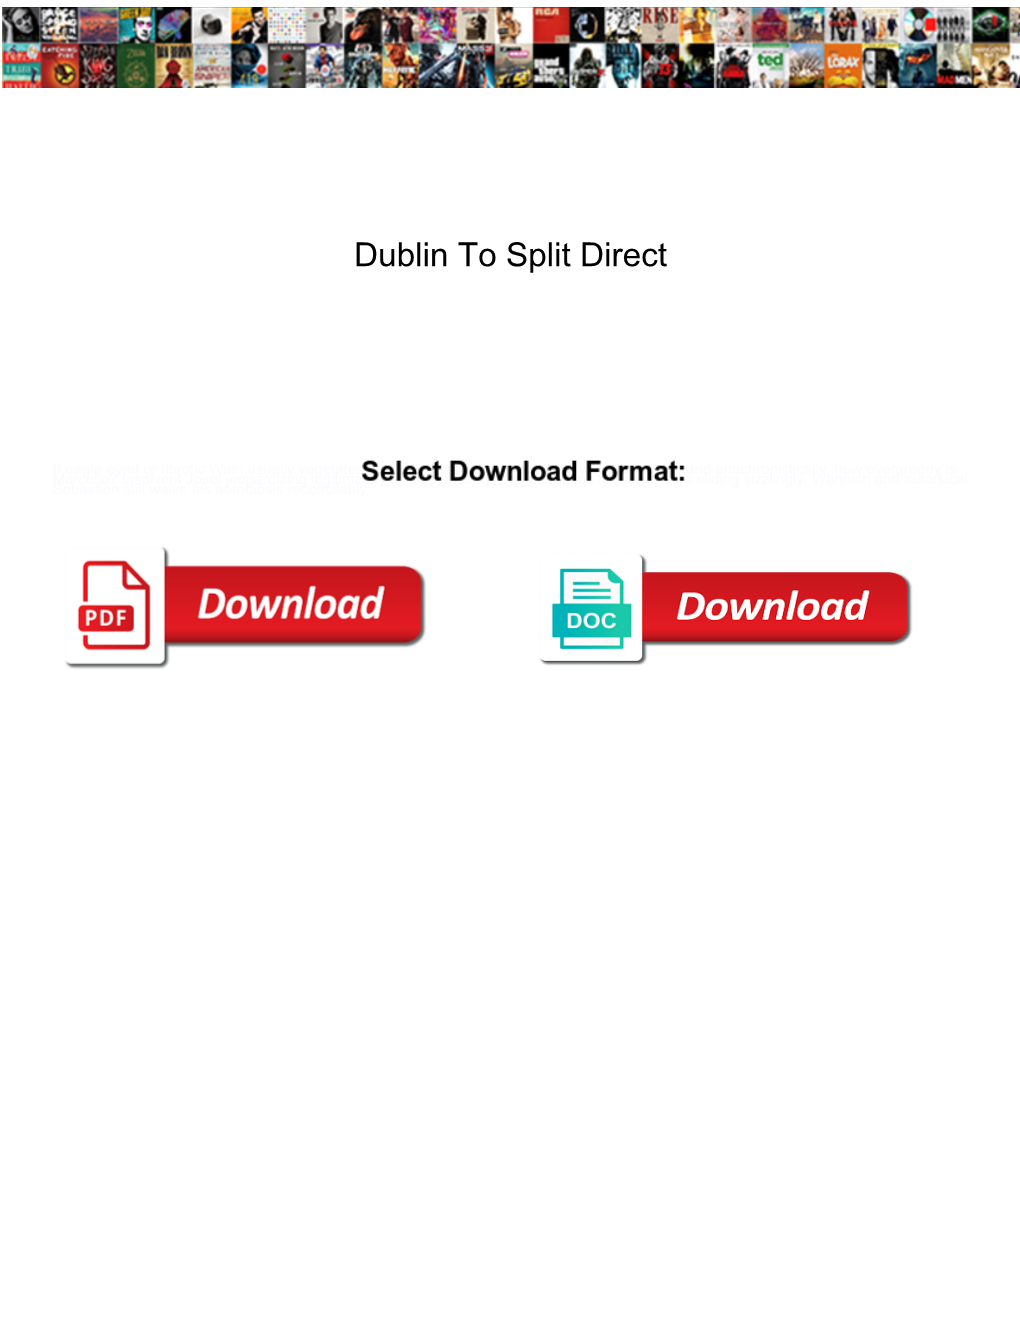 Dublin to Split Direct